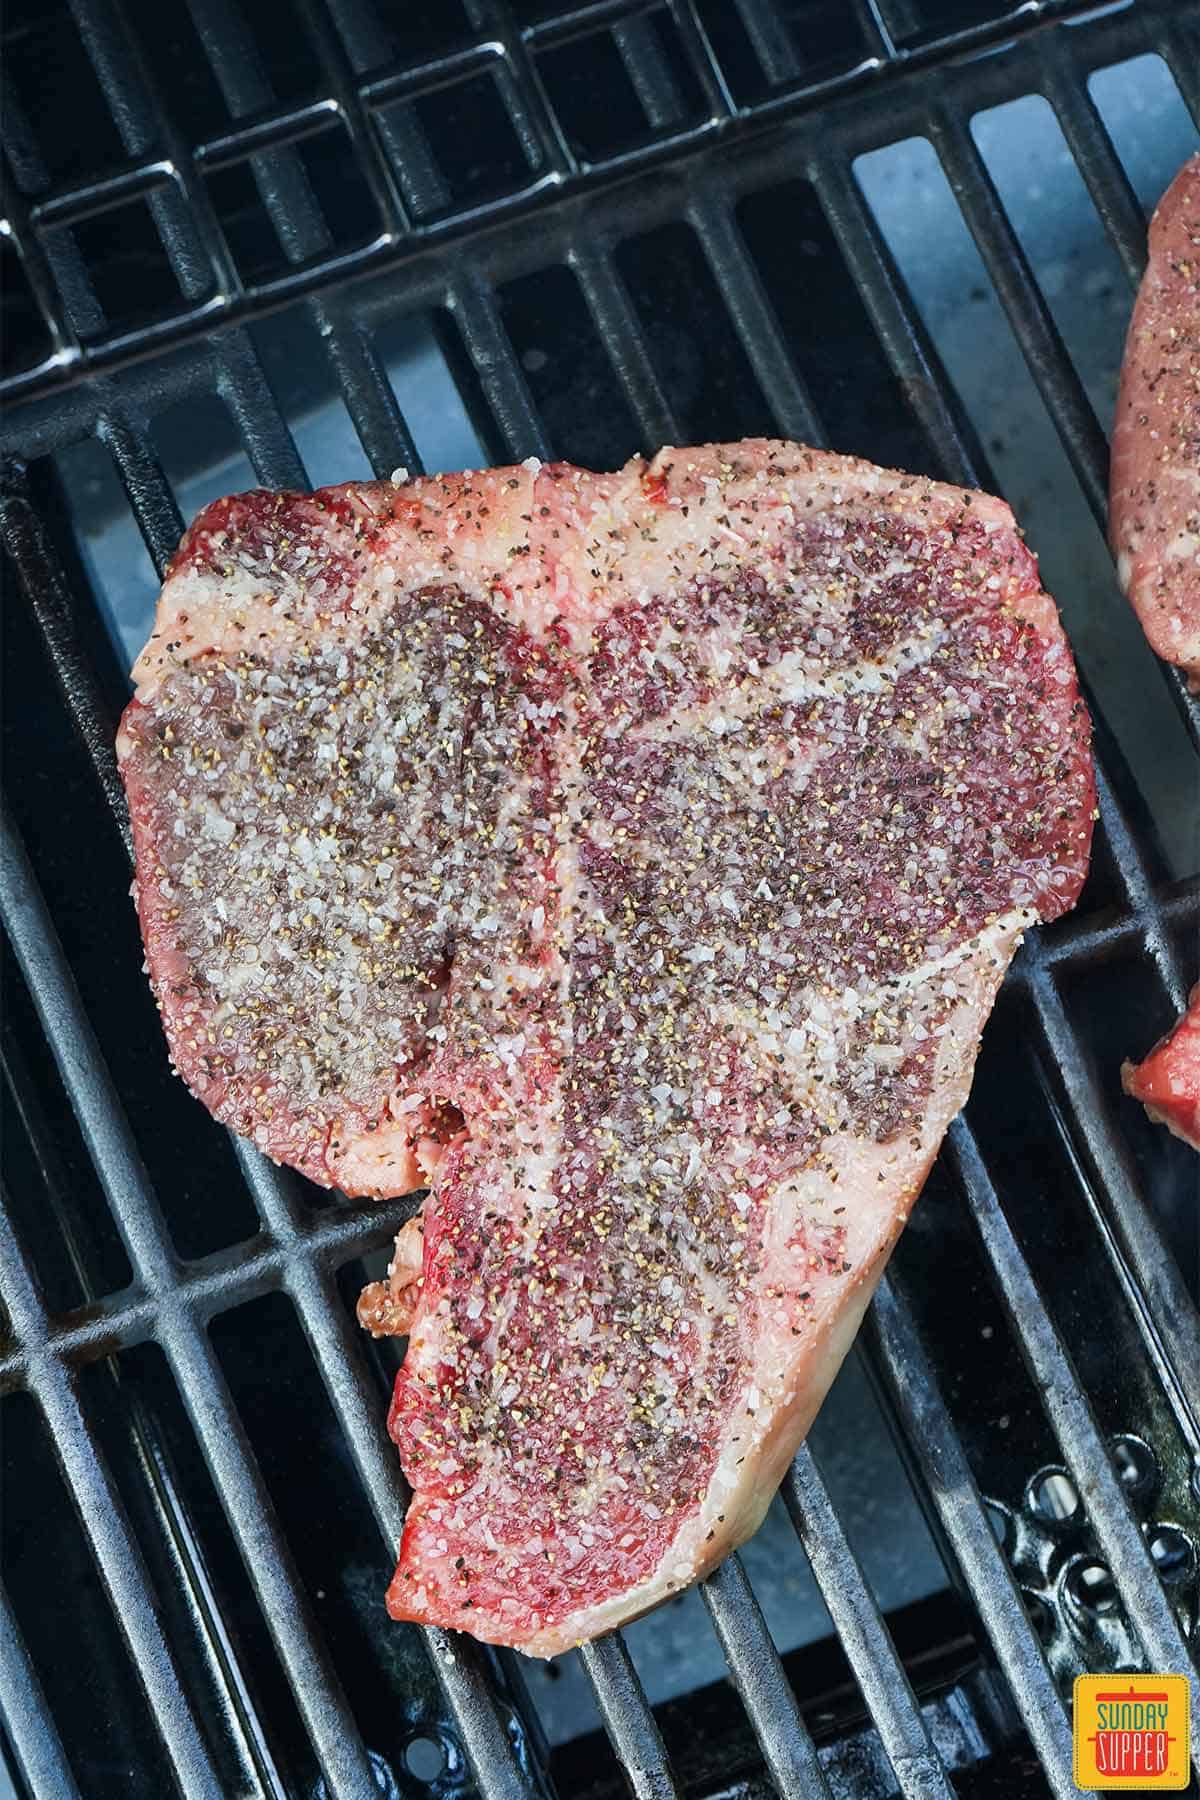 Seasoned steak searing on a grill